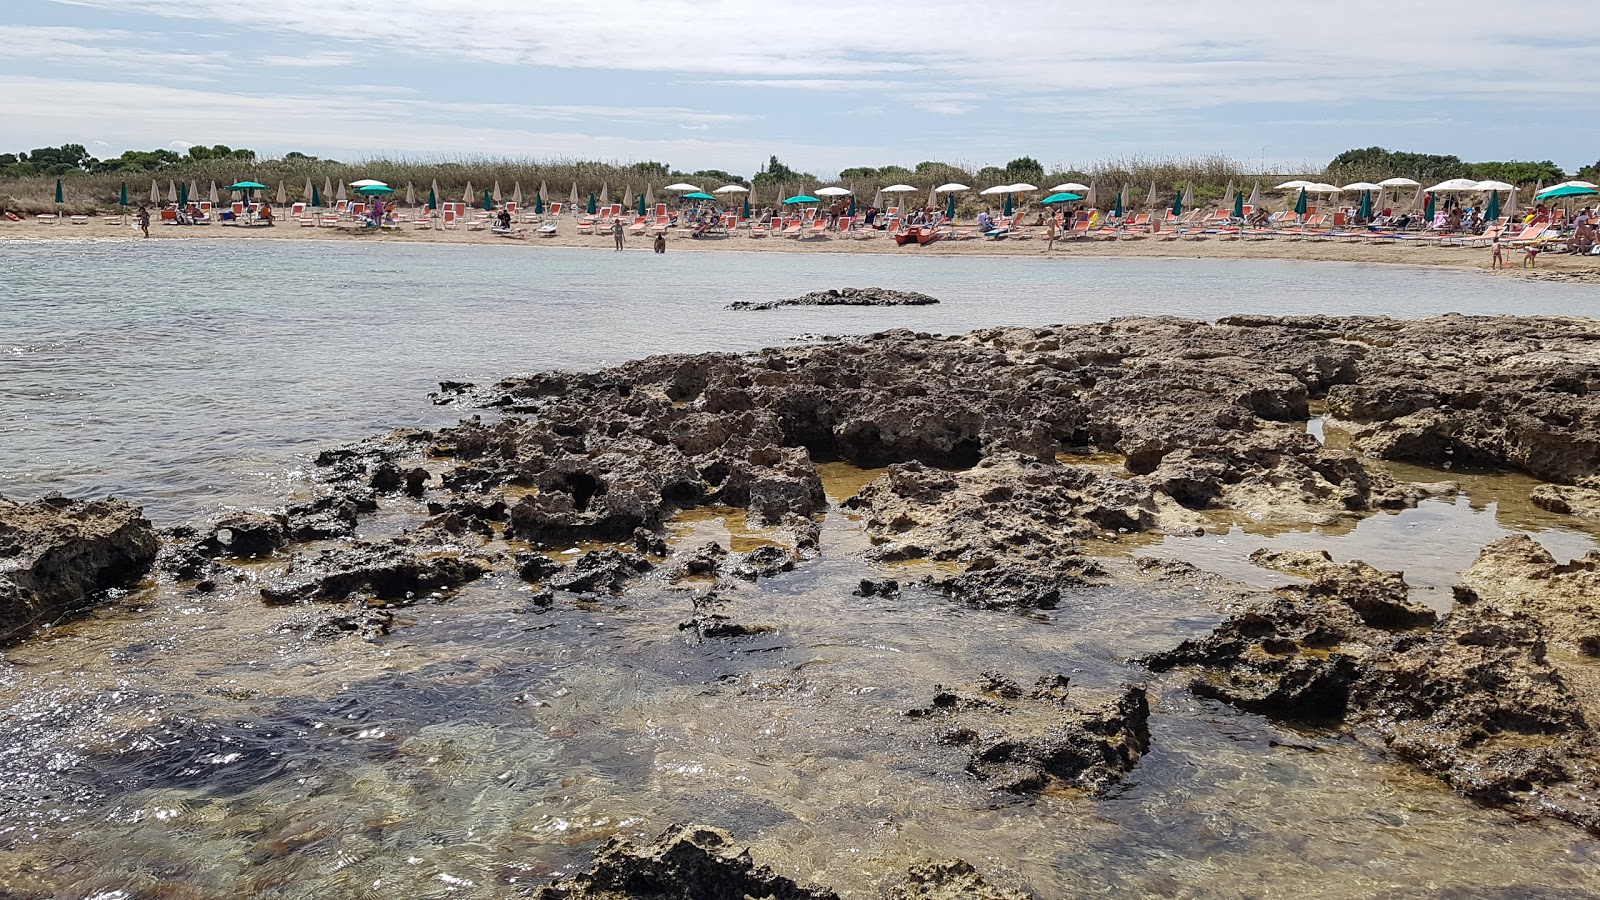 Fotografija Torre Santa Sabina beach nahaja se v naravnem okolju